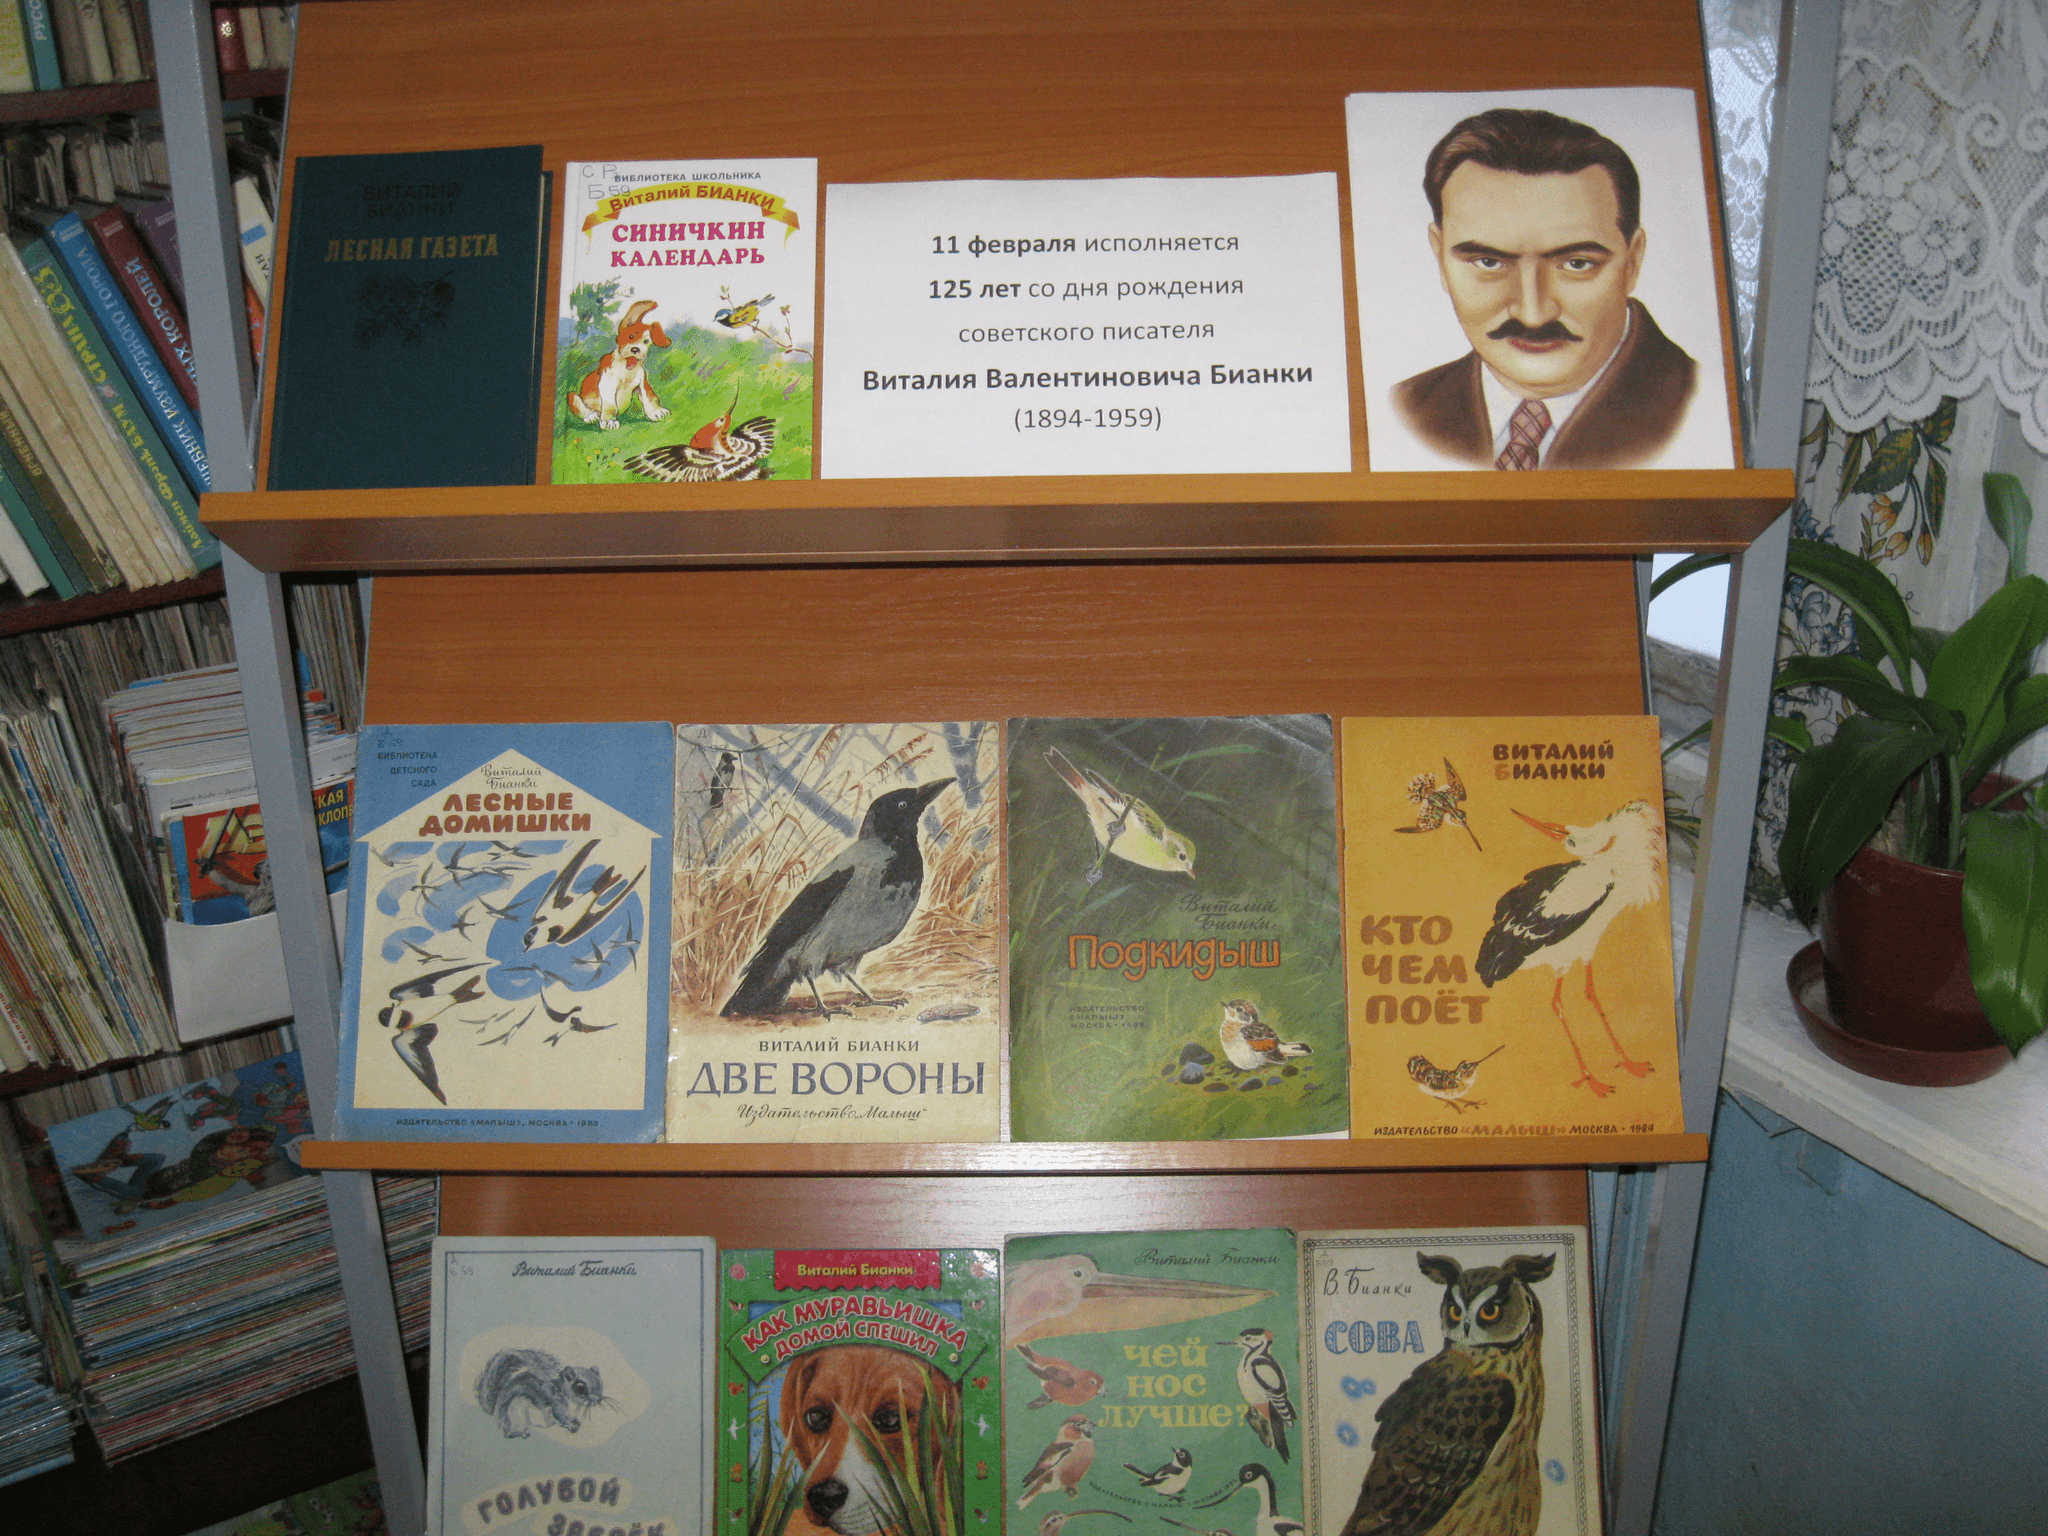 Выставка книг Бианки. Библиотека Виталия Бианки. Лесное путешествие с Виталием Бианки. Выставка книг Бианки для детей.